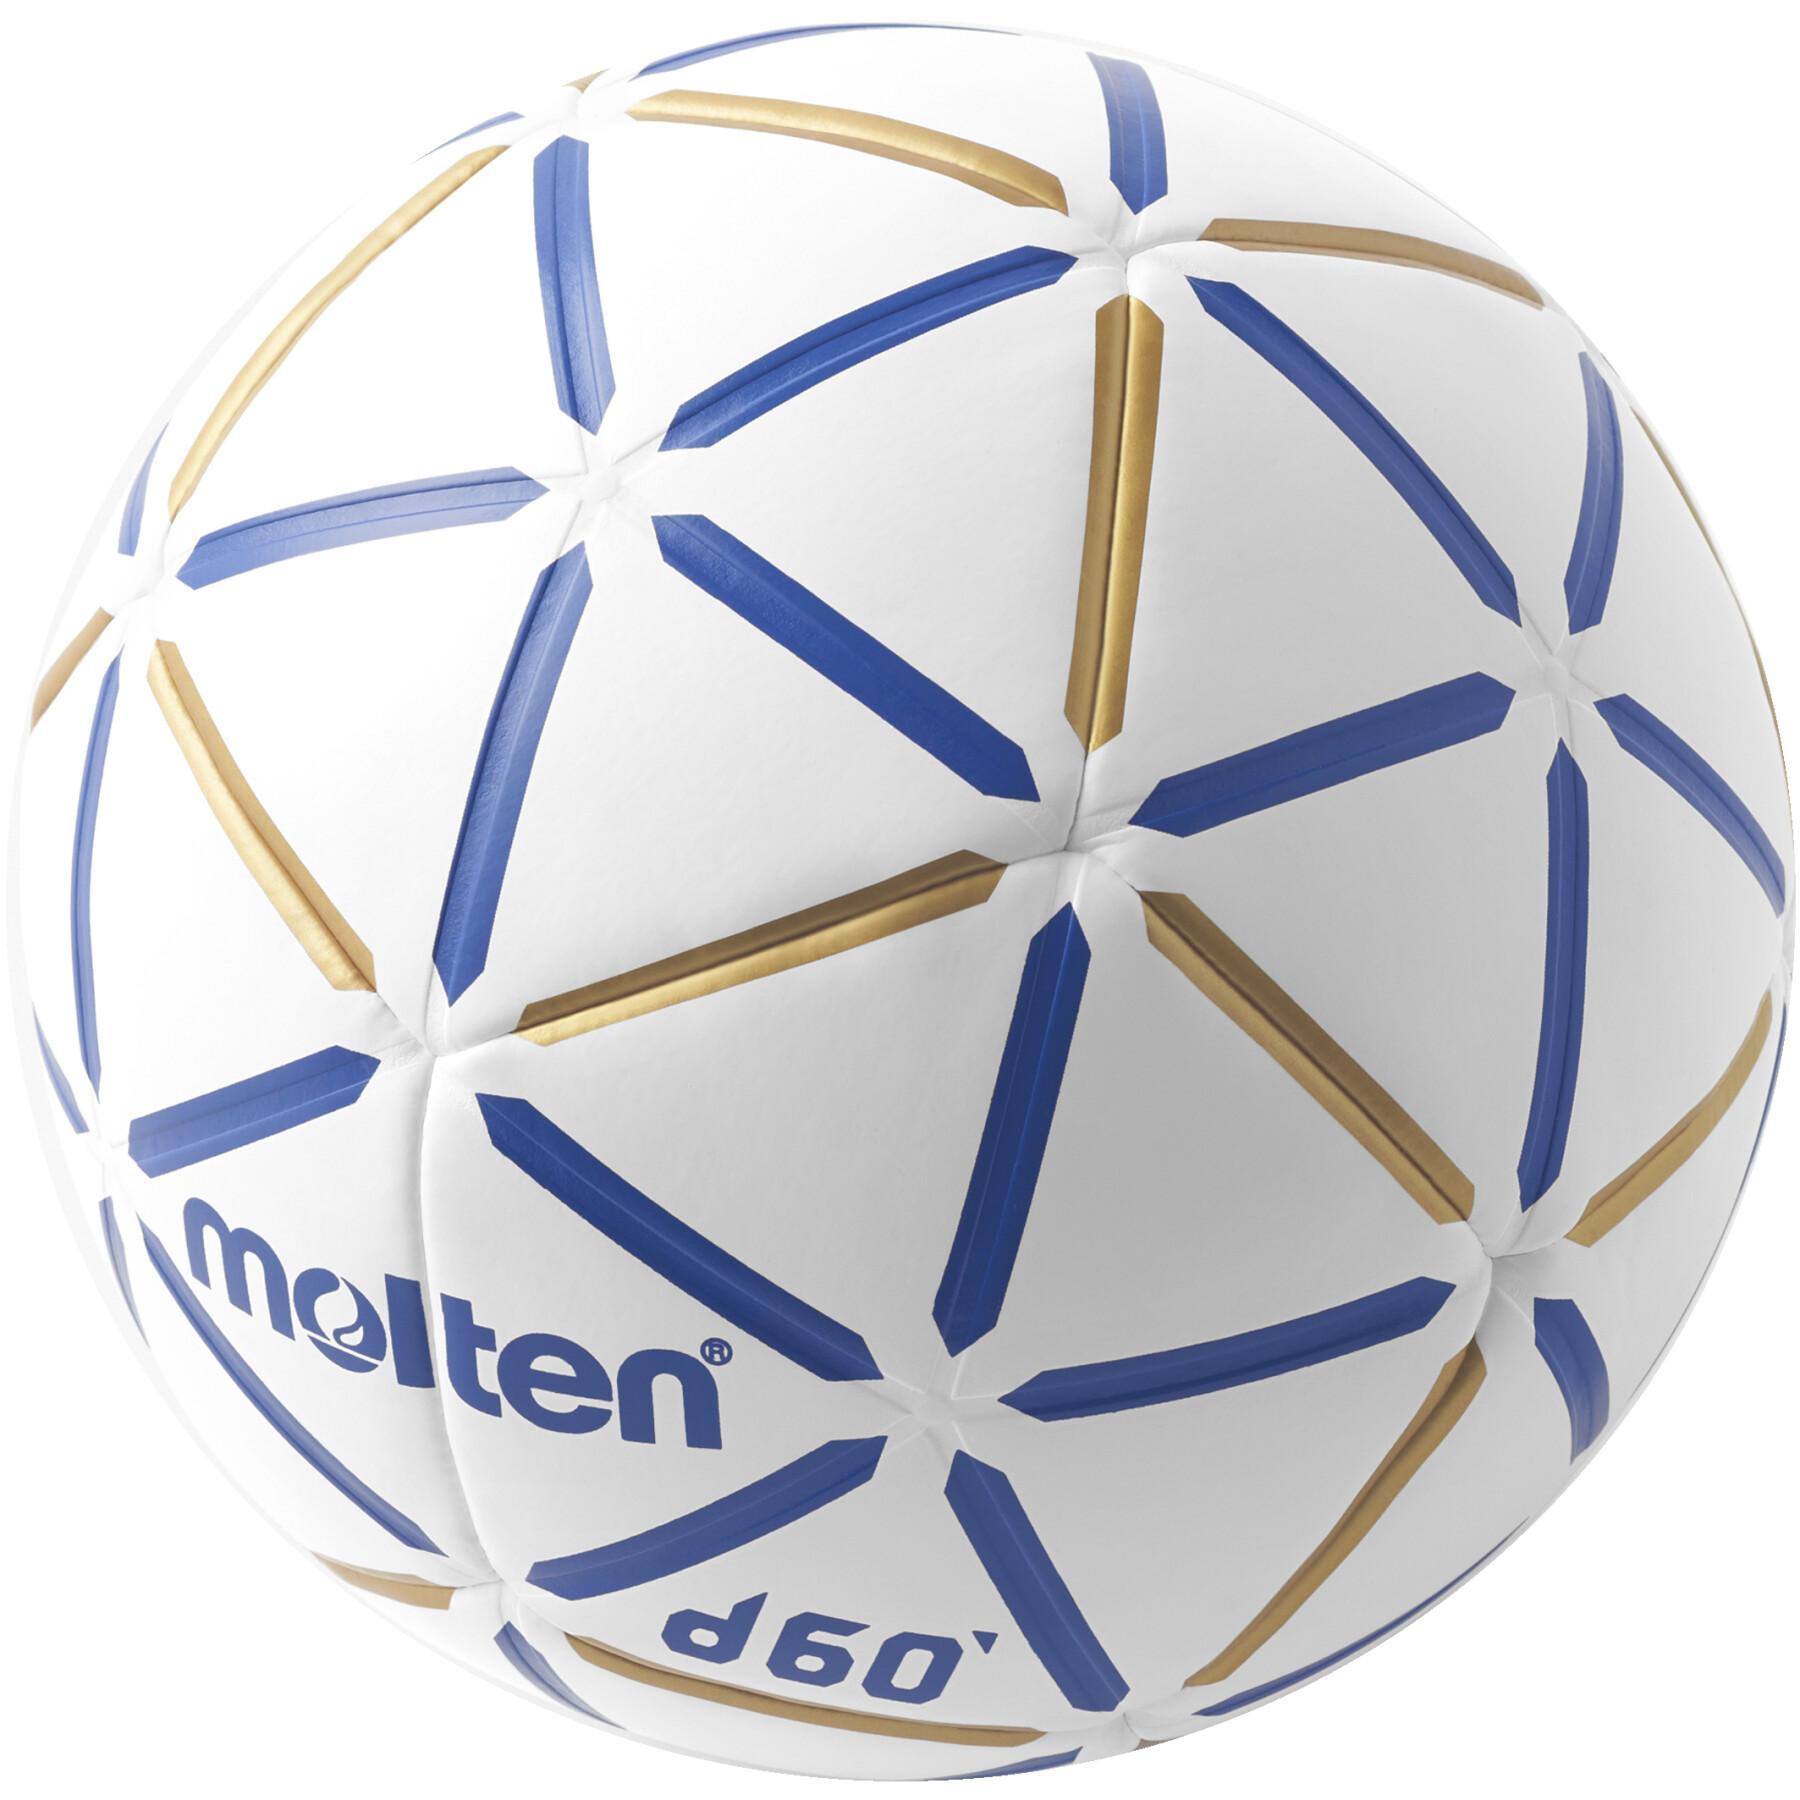 Pallone Molten Compet D60 Pro